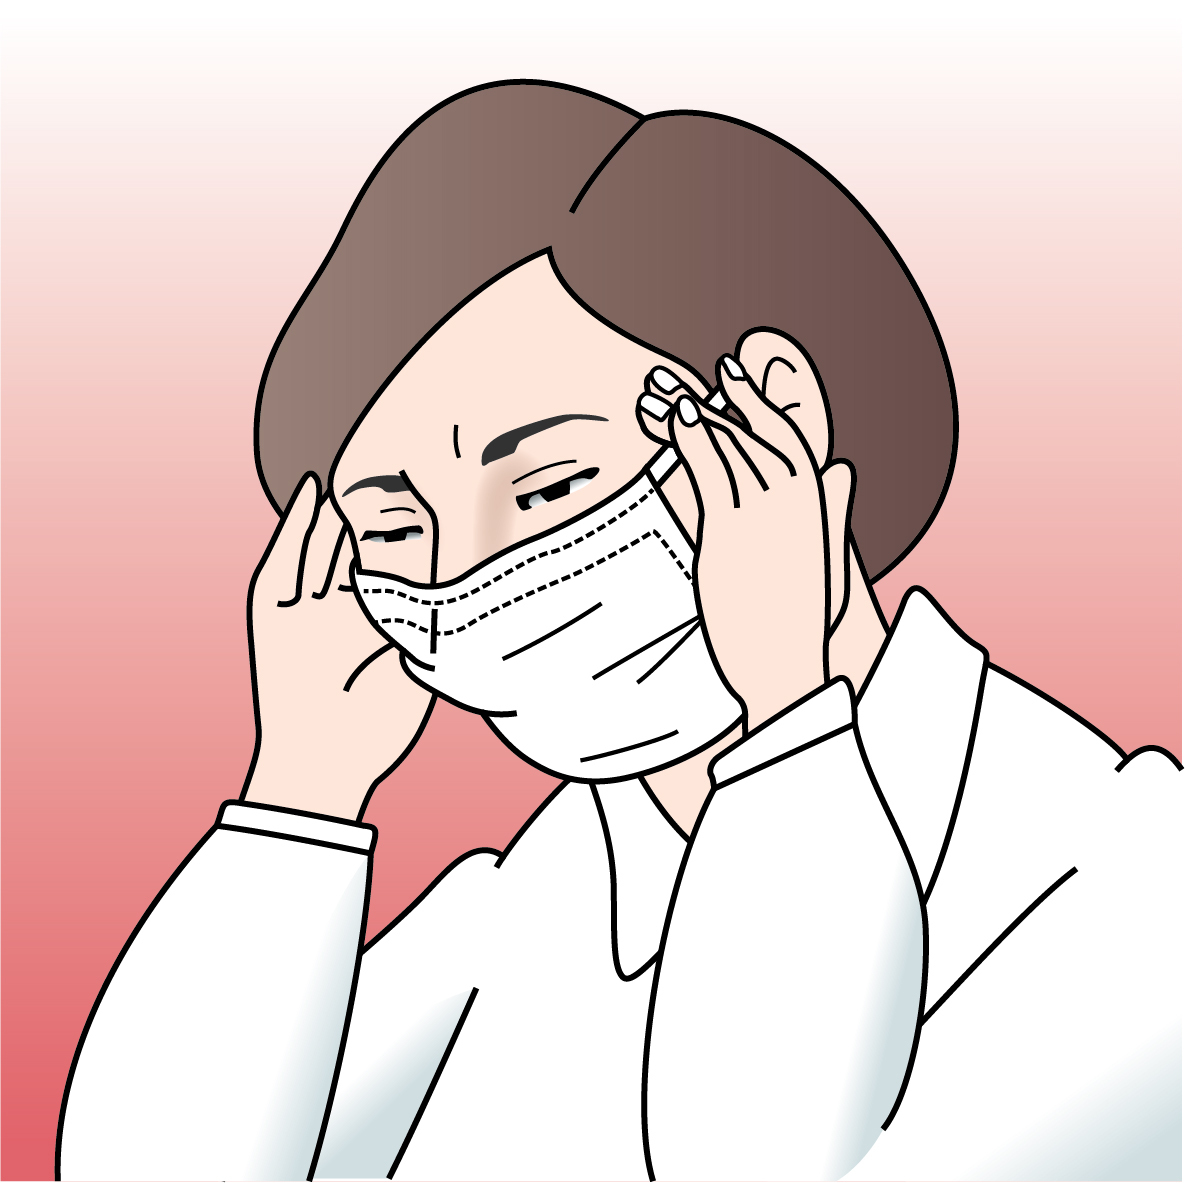 マスクによる呼吸の妨げだけでなく、耳掛けも頭痛の原因に